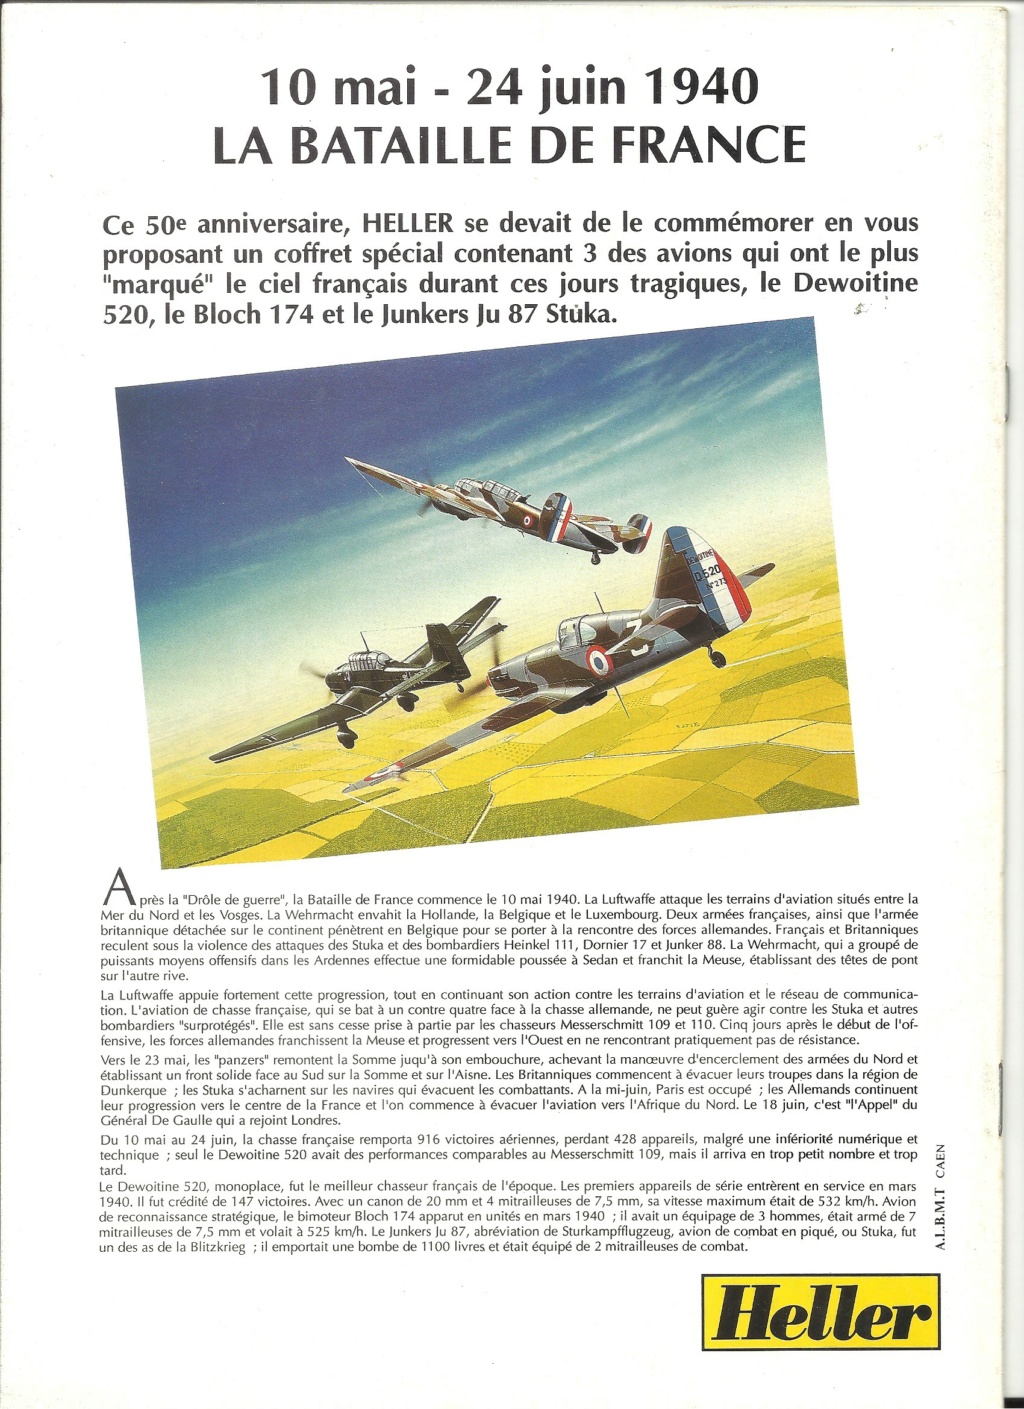 Pour le 50ème anniversaire de la Bataille de FRANCE 10 mai - 24 juin 1940 Hell2848